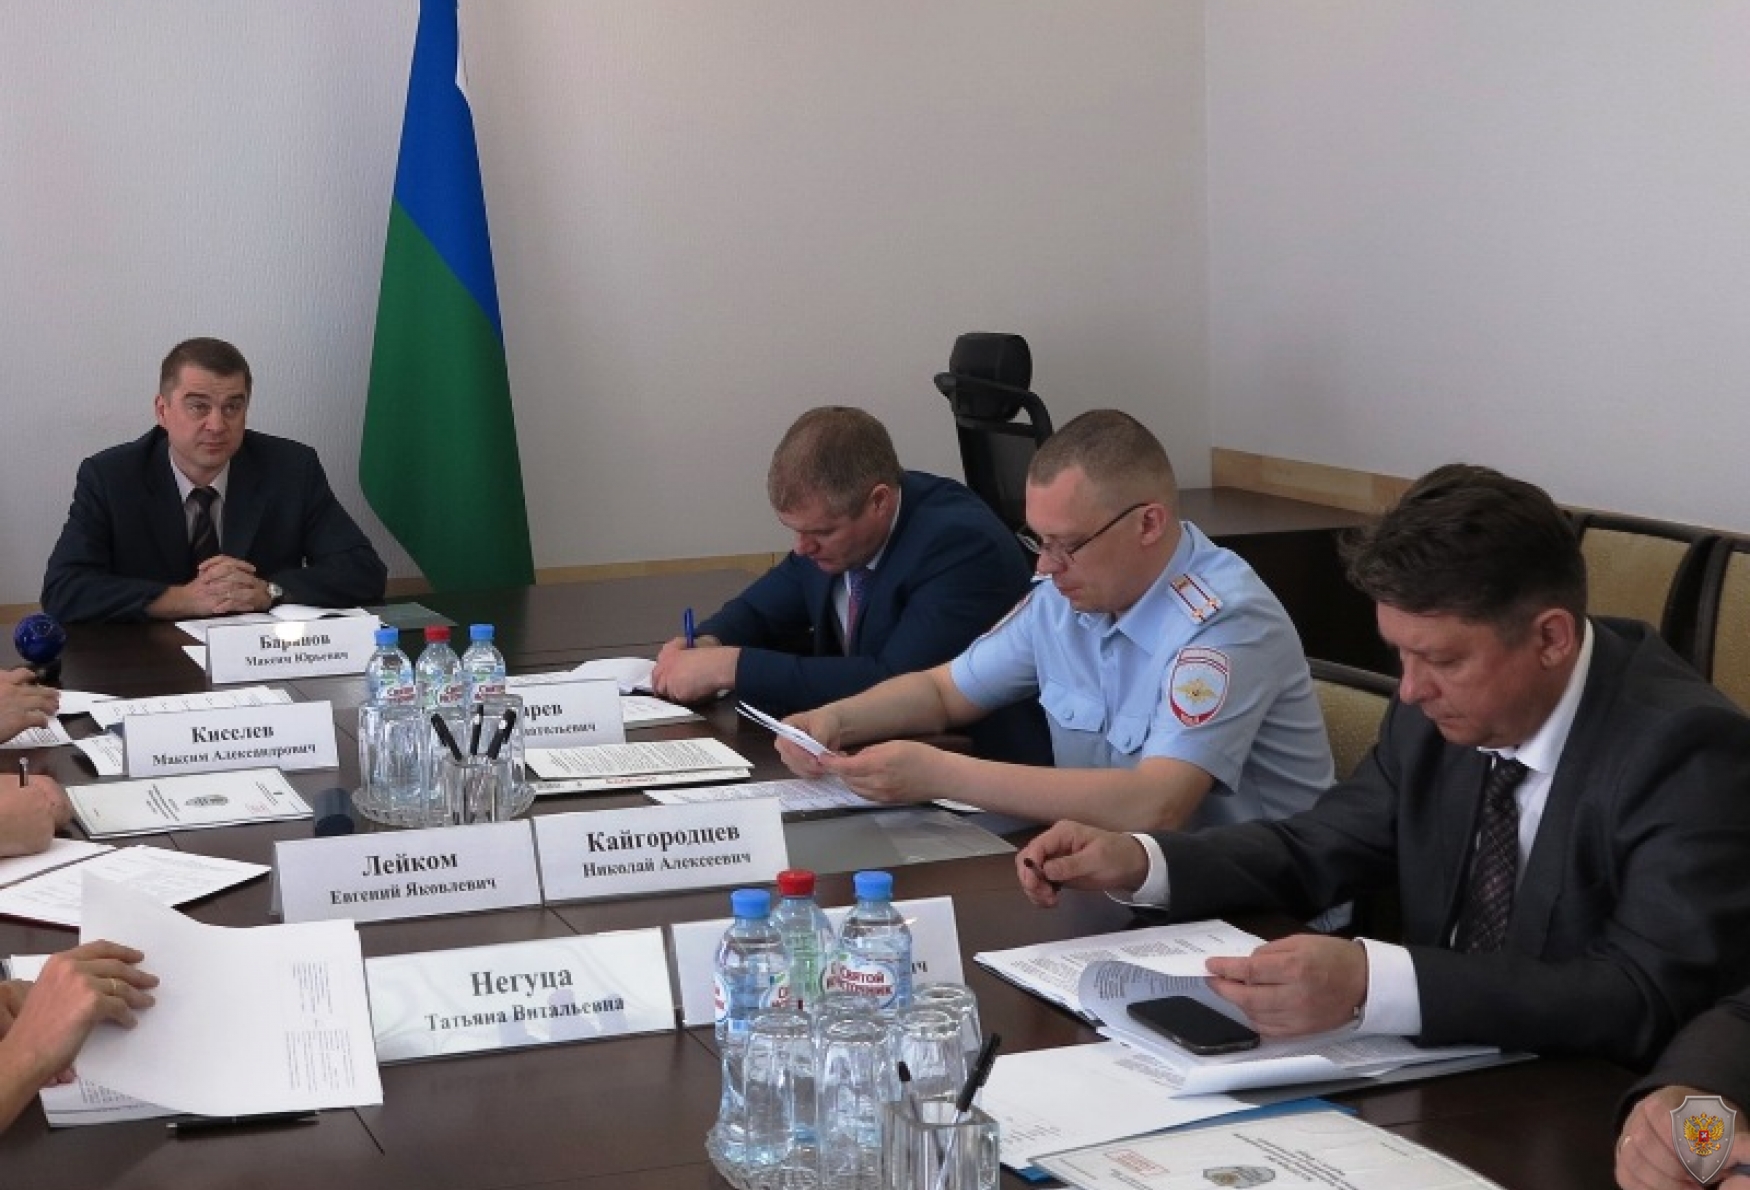 Подведение итогов заседания временной межведомственной рабочей группы Антитеррористической комиссии Ханты-Мансийского автономного округа – Югры 